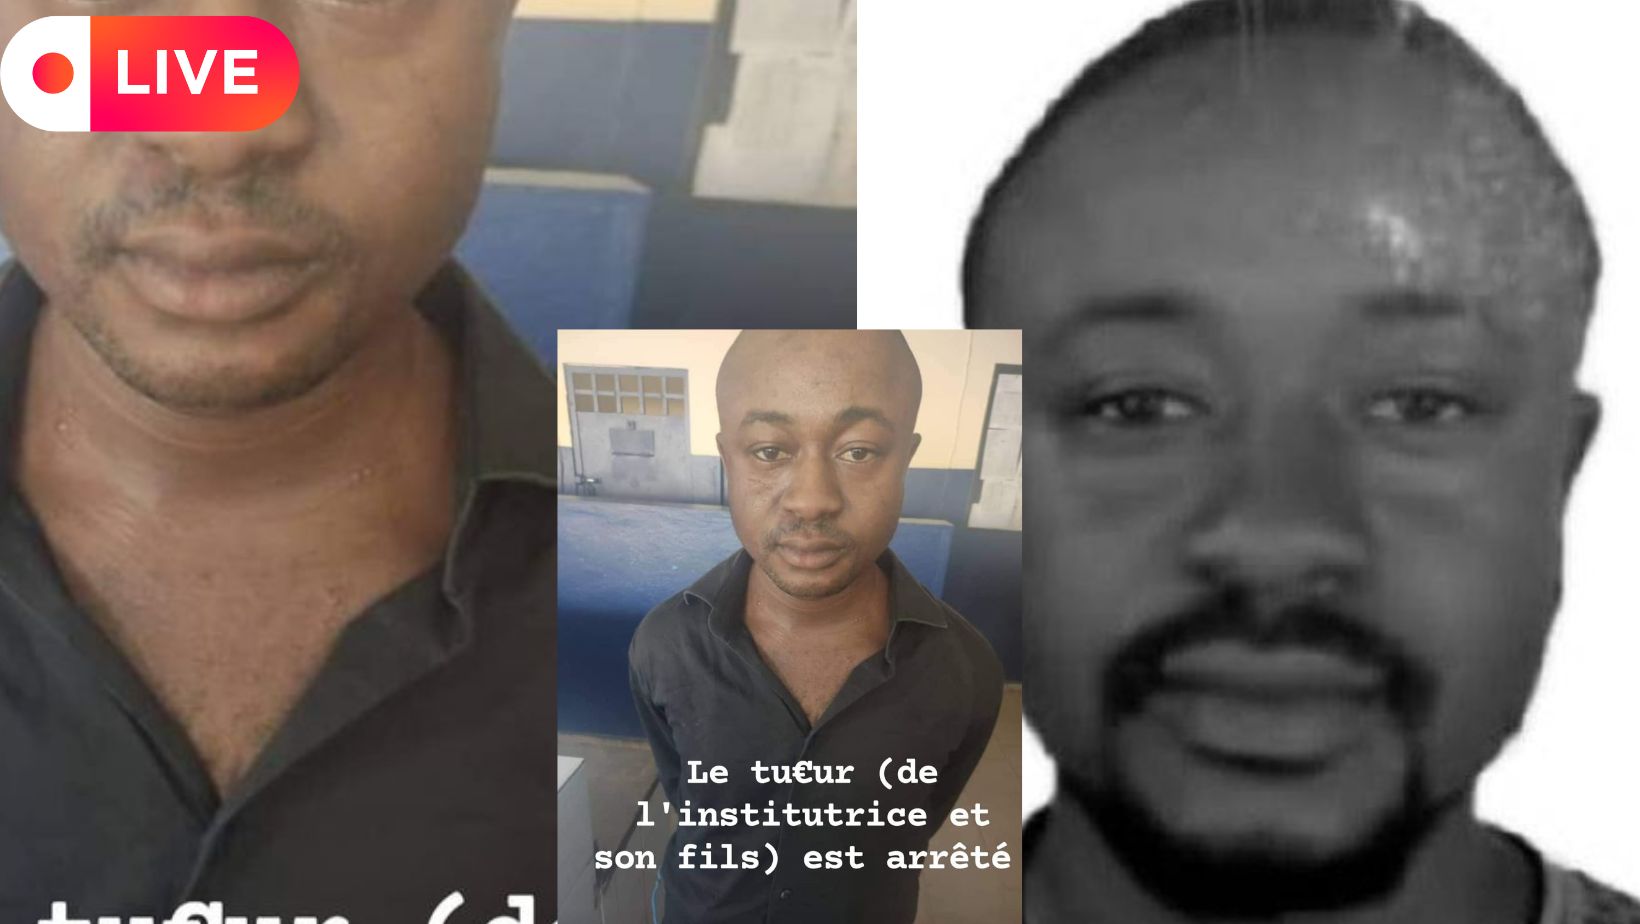 Le Présumé assassin de l’institutrice et son fils à Man arrêté à Abobo (VIDEO)